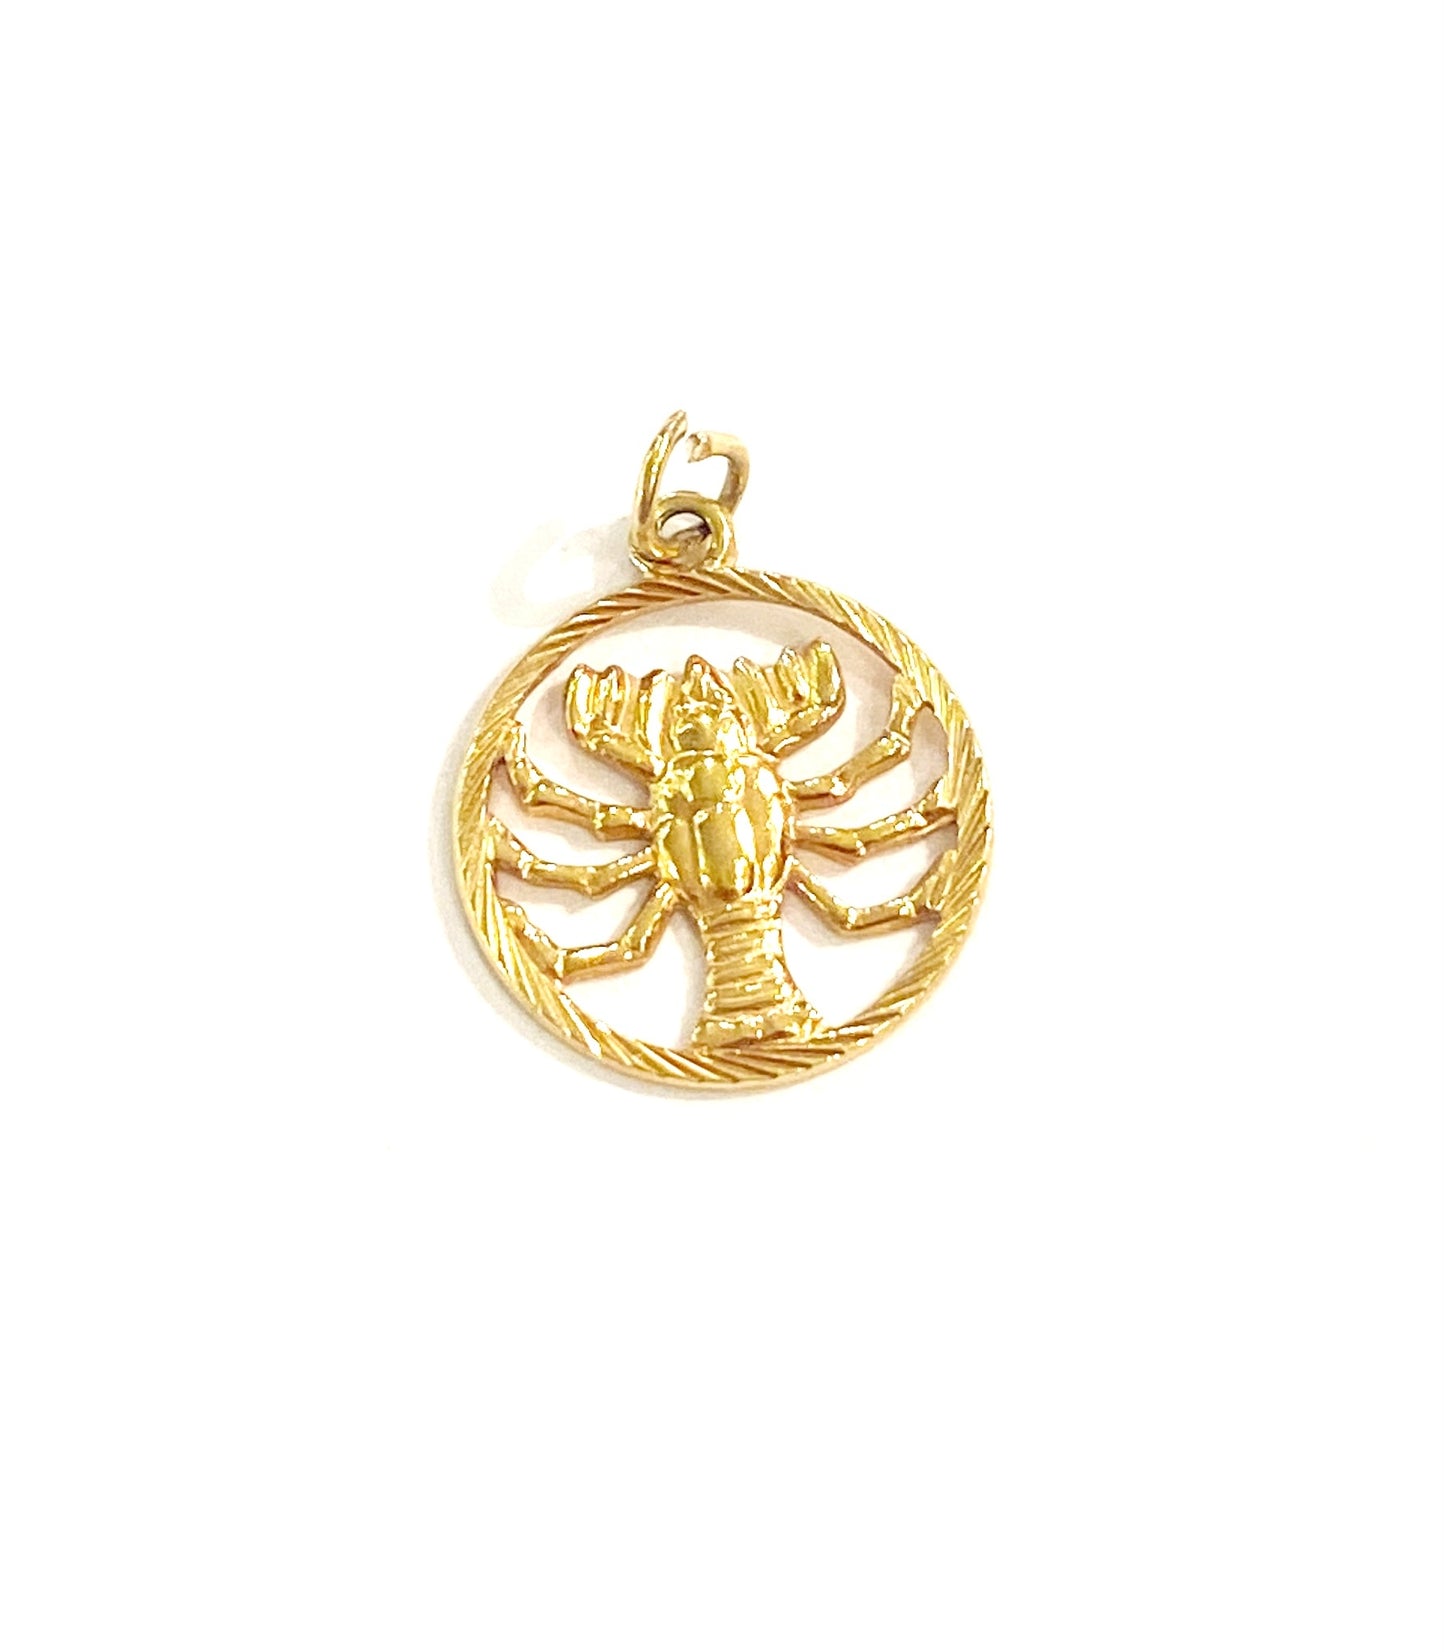 18ct 750 vintage scorpio charm / pendant